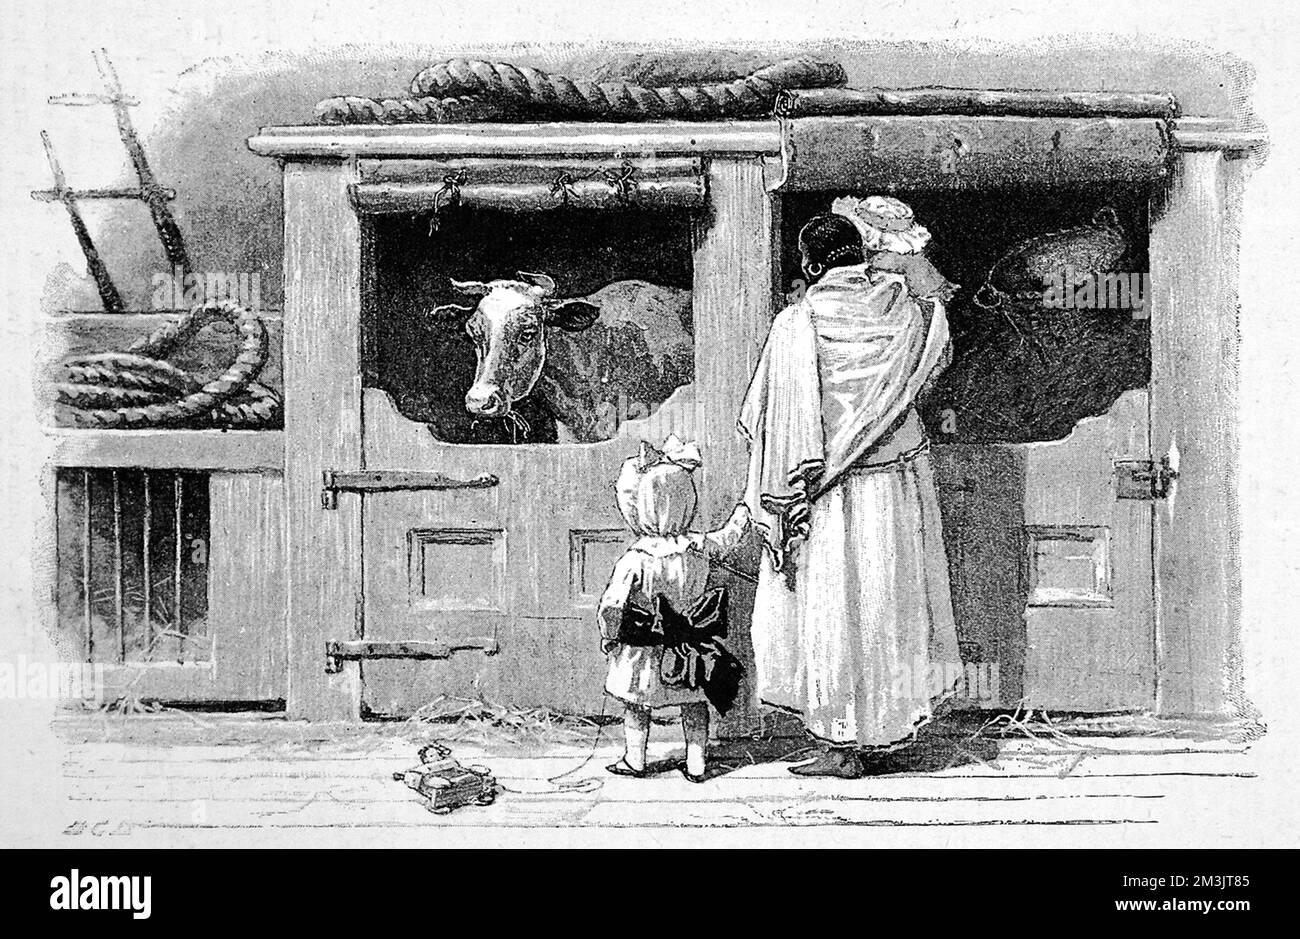 Mehrere Passagiere bewundern die Kuh eines P&amp;O-Schiffes. Vieh war zu dieser Zeit ein häufiges Merkmal an Bord, wie der speziell für dieses Wesen gebaute Stall bezeugt. 1890 Stockfoto